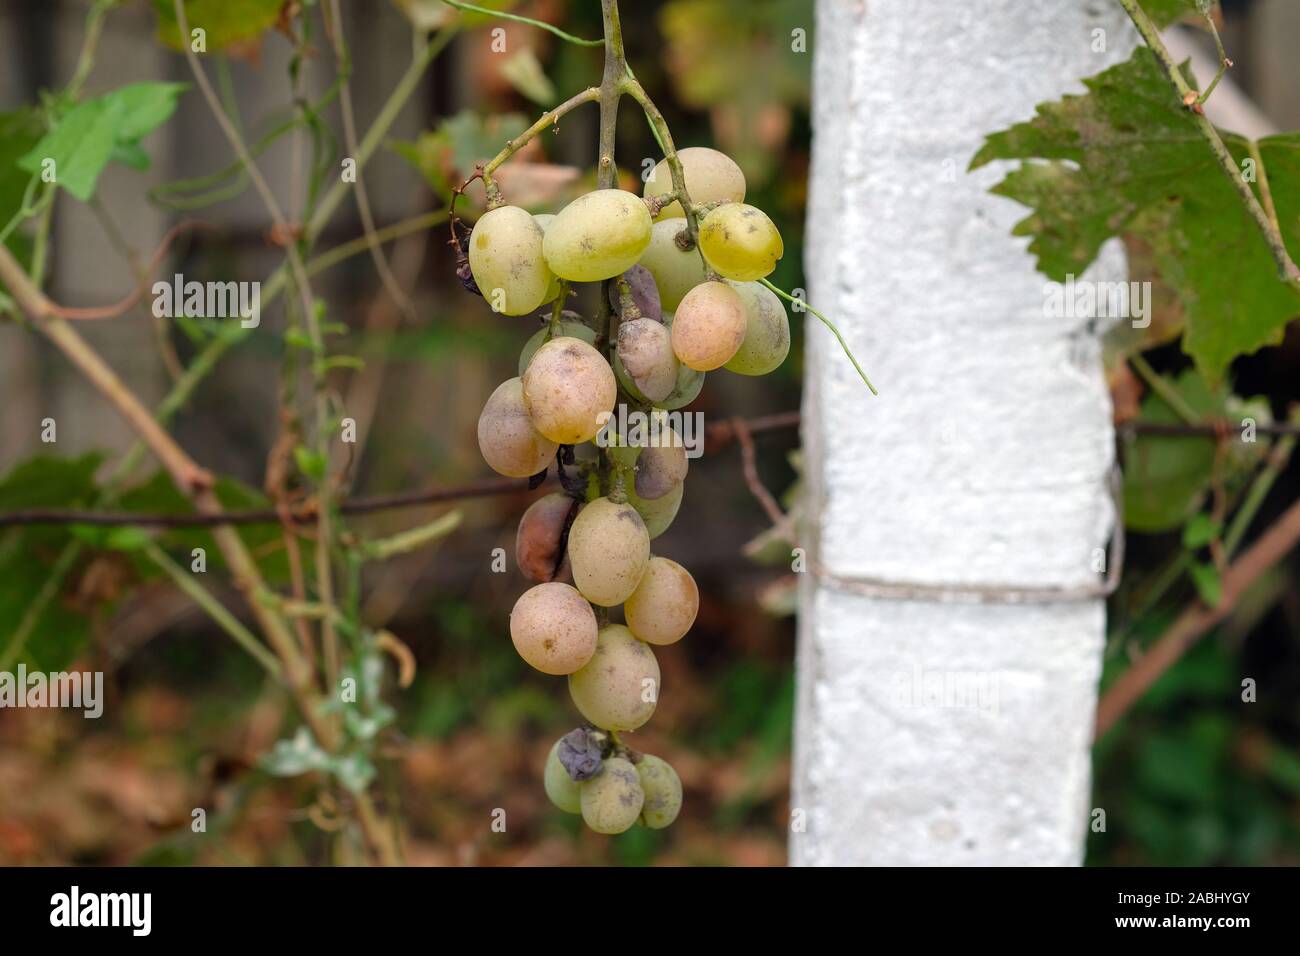 Ein Bündel von Tafeltrauben Muscat. Grüne Trauben im Land gewachsen. Ernte der Trauben, der weintraube mit Qual faule Beeren. Stockfoto